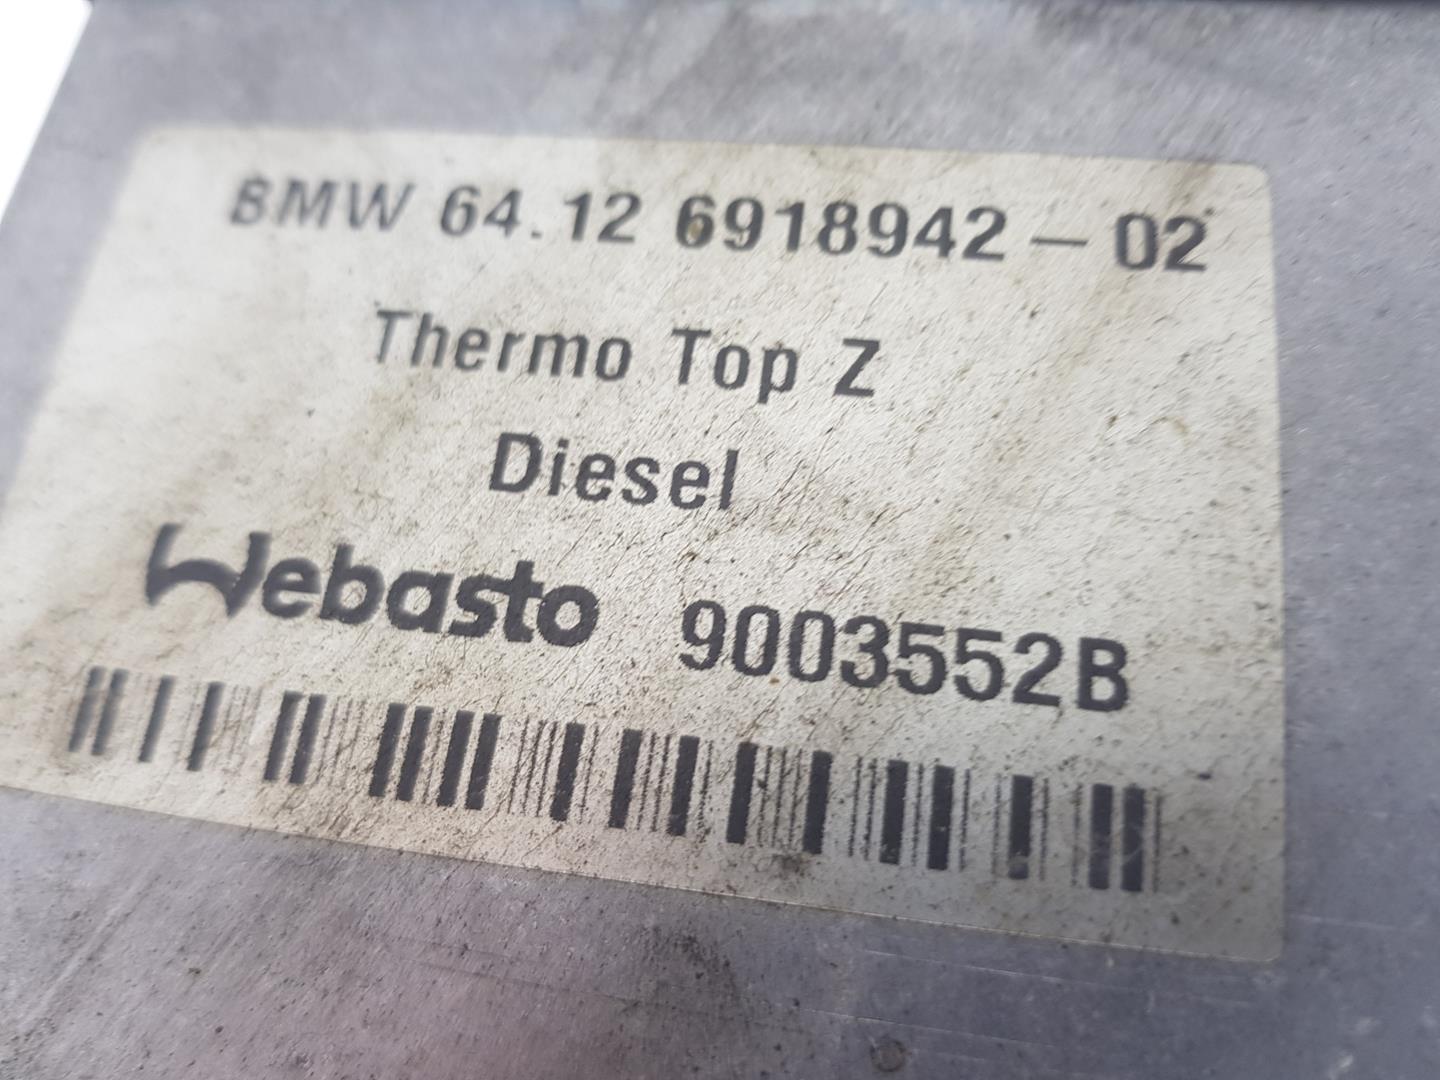 BMW X5 E53 (1999-2006) Heater Blower Fan 66724B, 64128381207 23752486